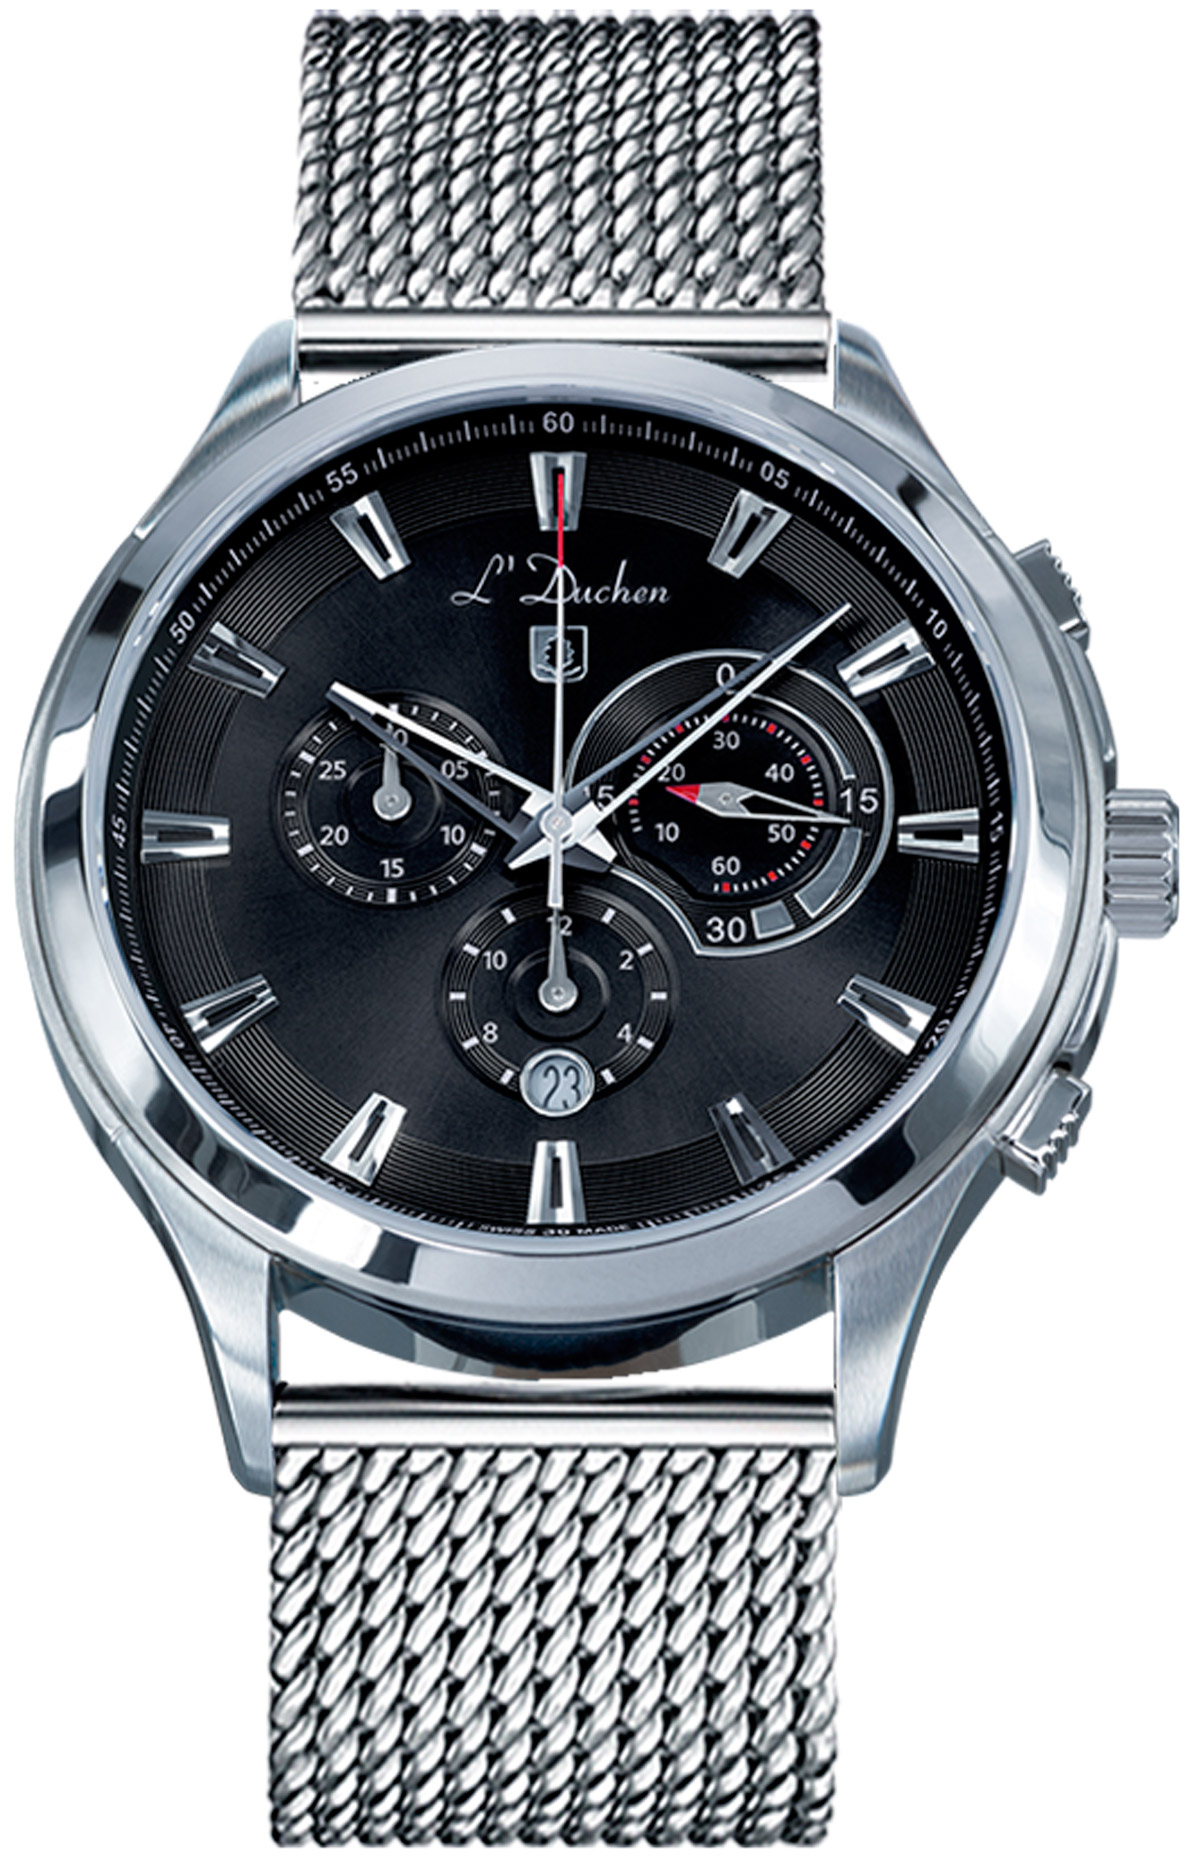 Наручные часы мужские L'Duchen D 742.11.31 M серебристые